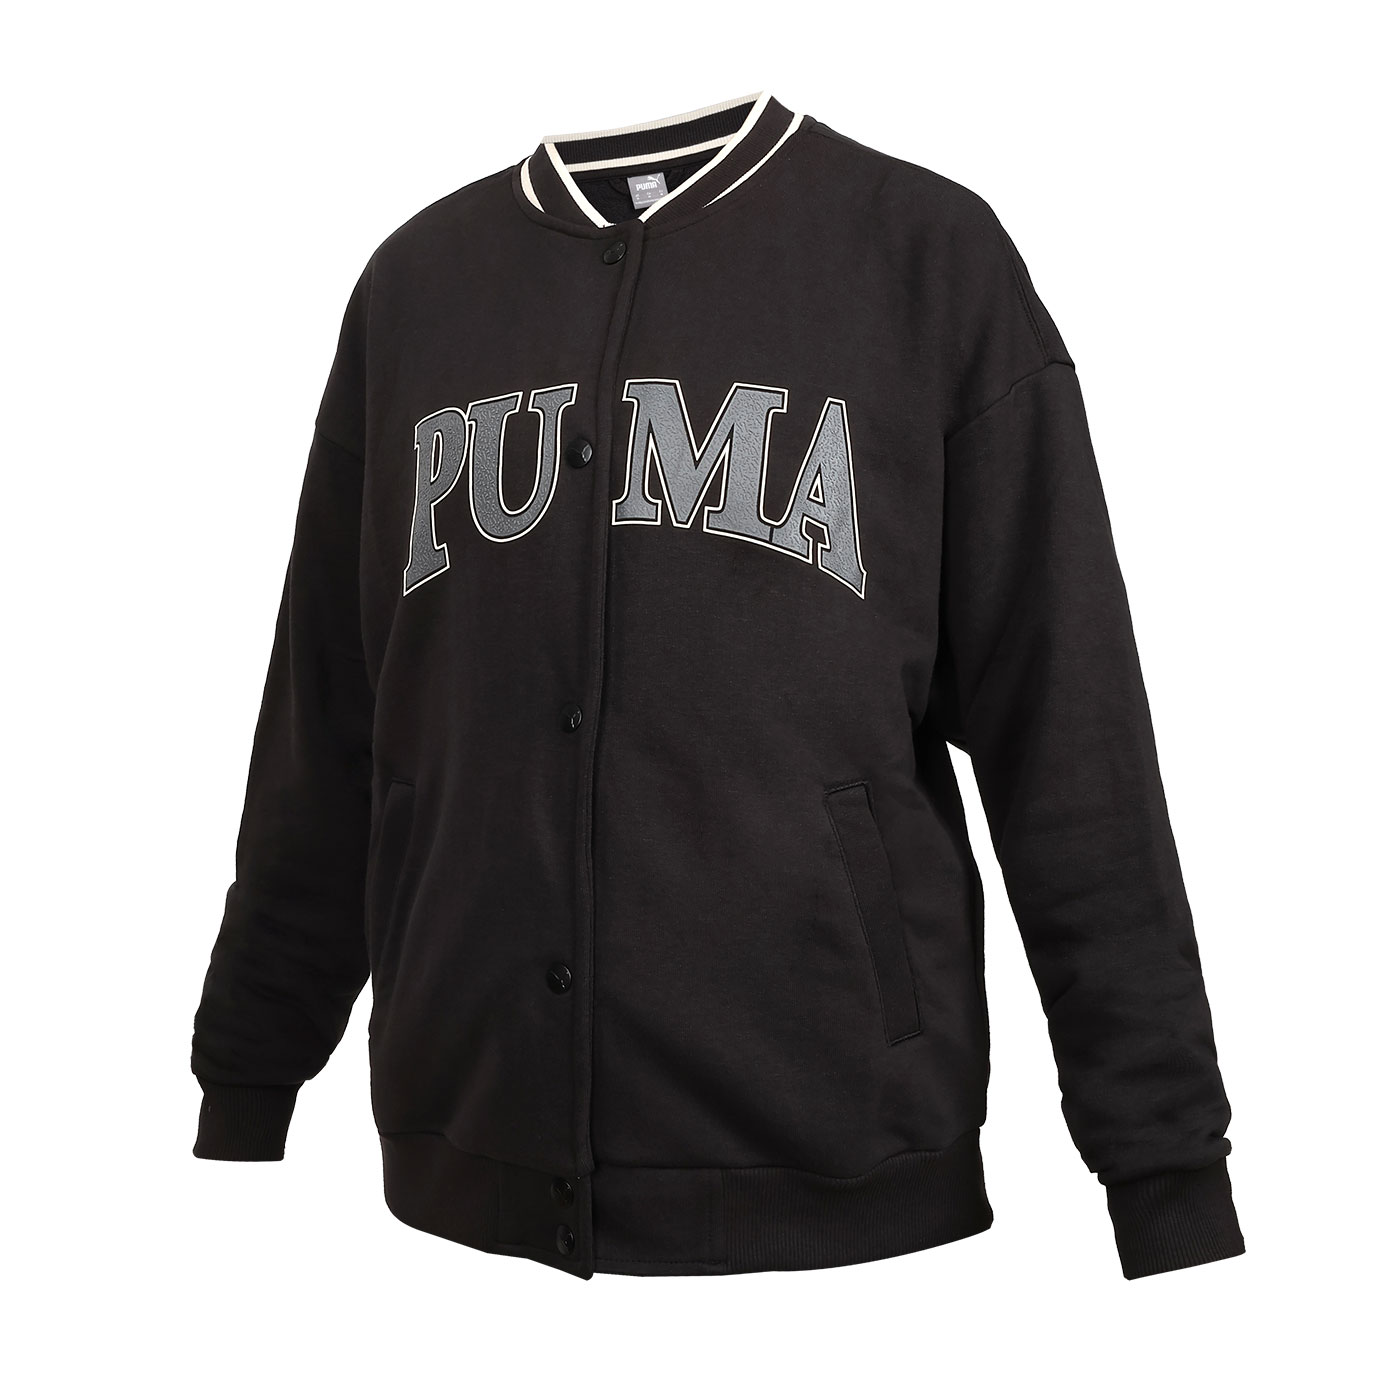 PUMA 女款基本系列Squad棒球外套  67790201 - 黑灰米白